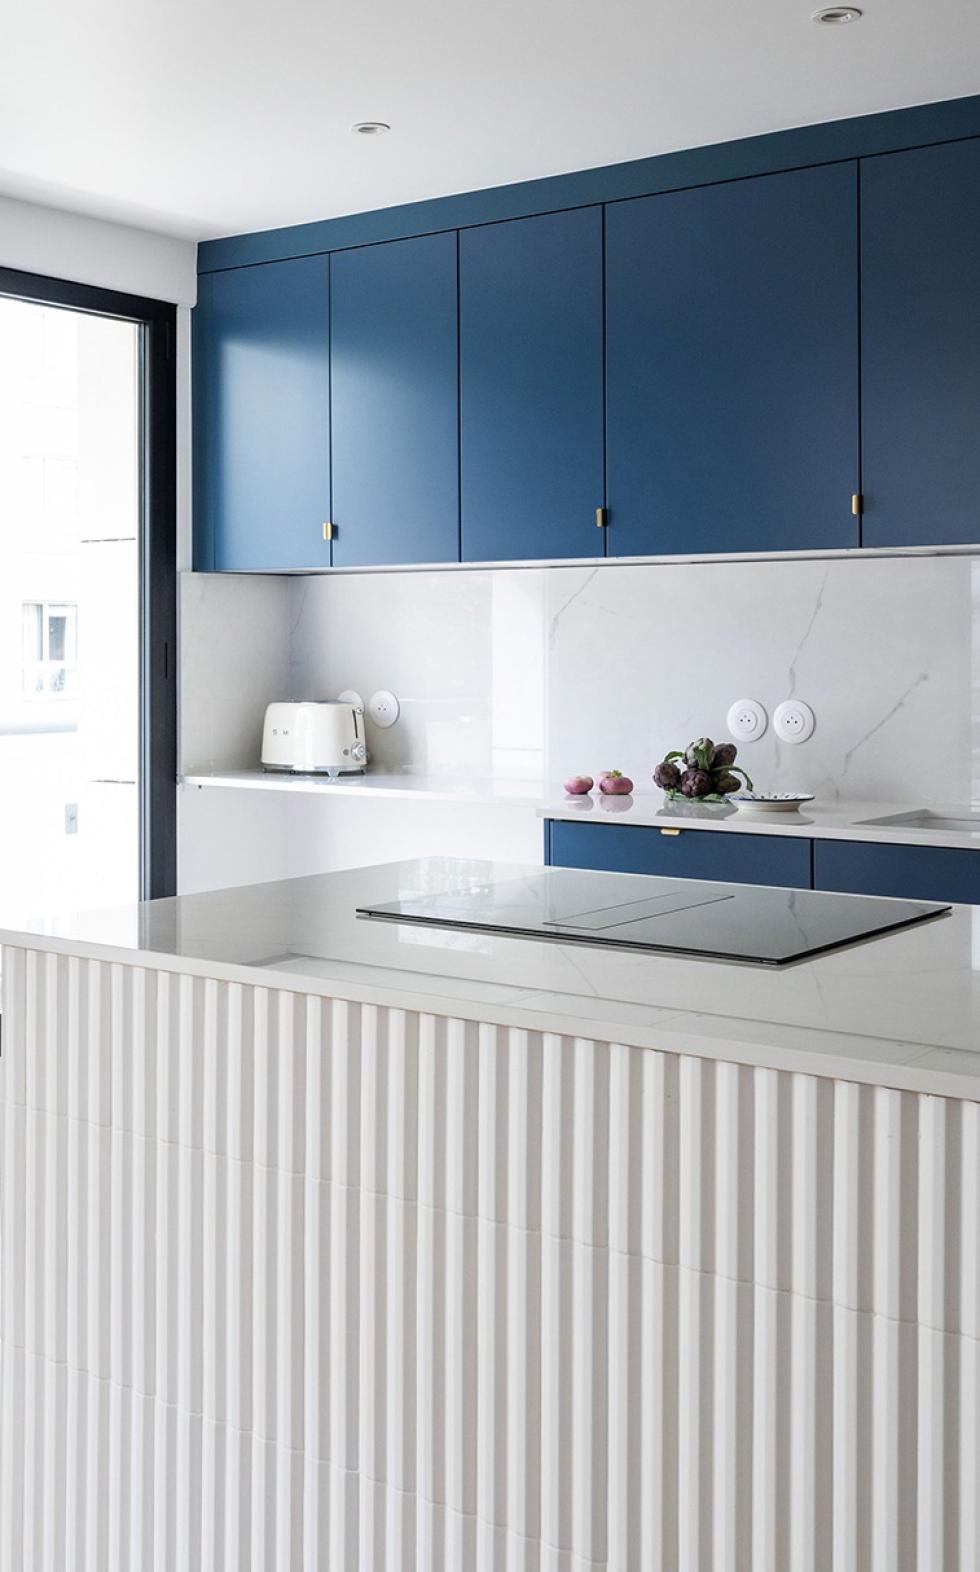 A Bleu gris kitchen by Studio 464